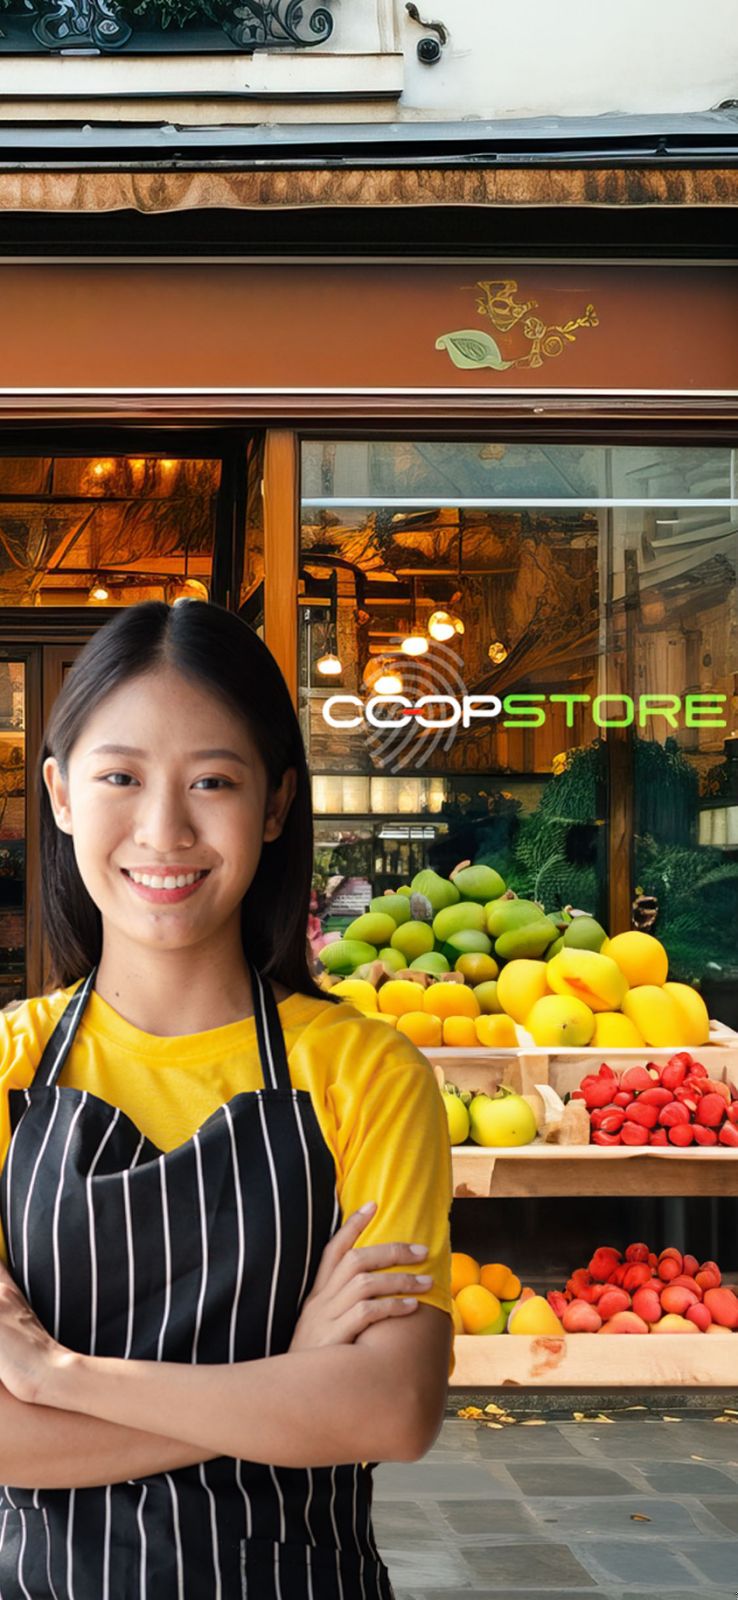 Coop-Store